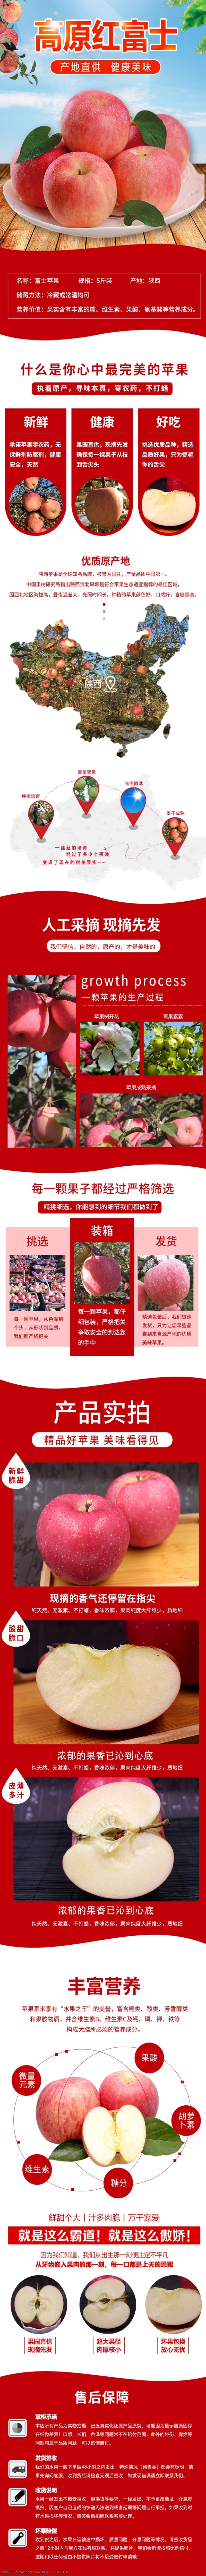 富士 苹果 清新 夏季 水果 详情 页 模板 天猫 详情页 唯美 红 淘宝 食品